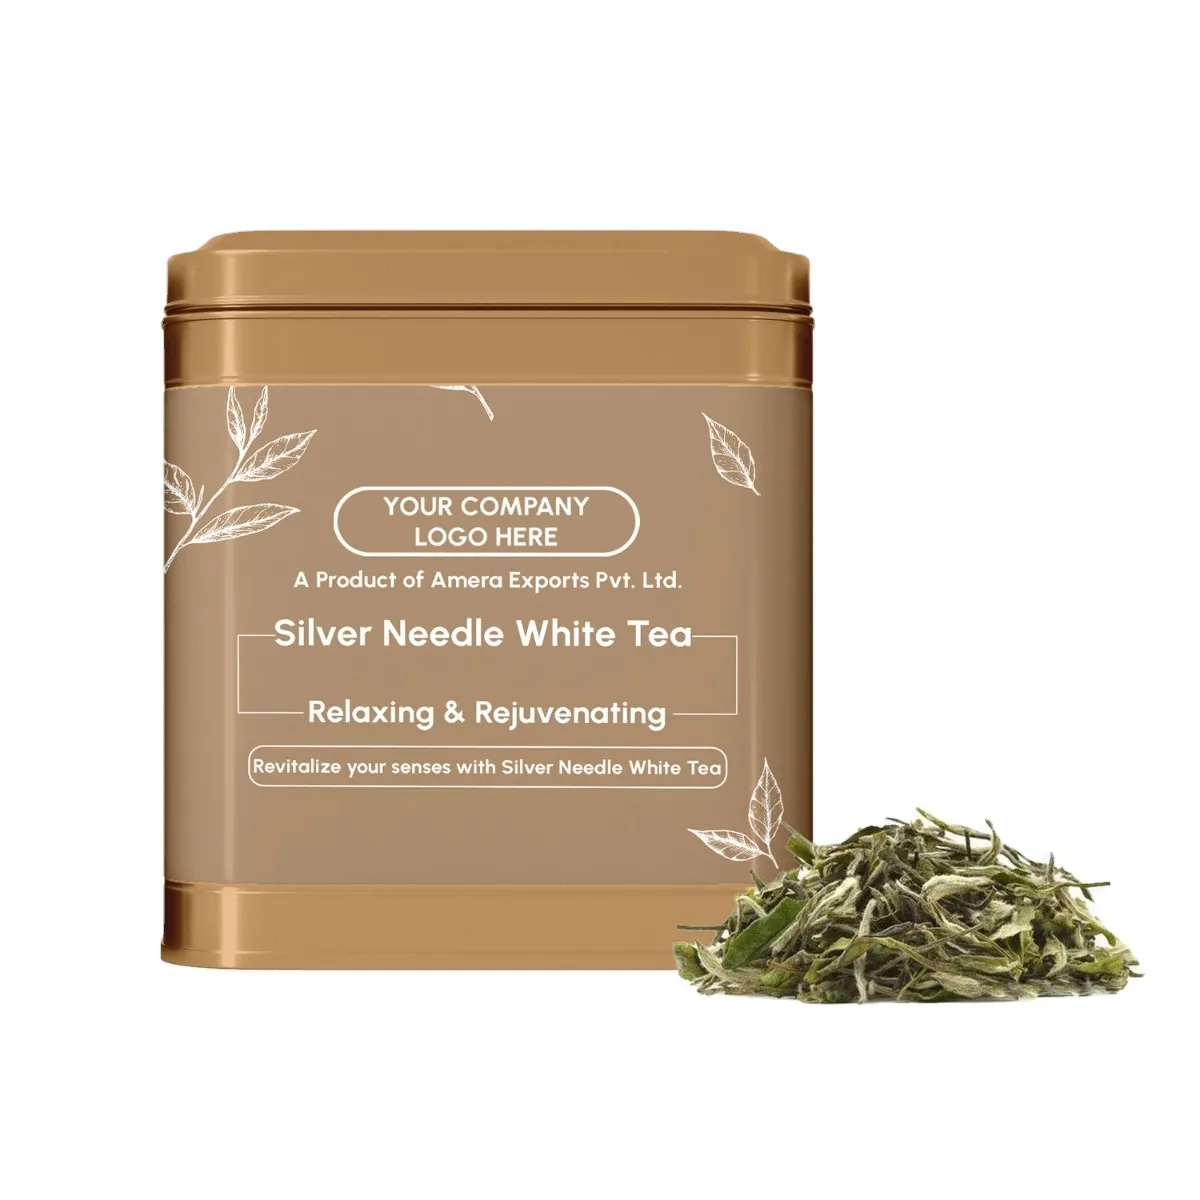 Personalizzazione del supporto di qualità Premium sfusa vero tè verde Darjeeling dal produttore